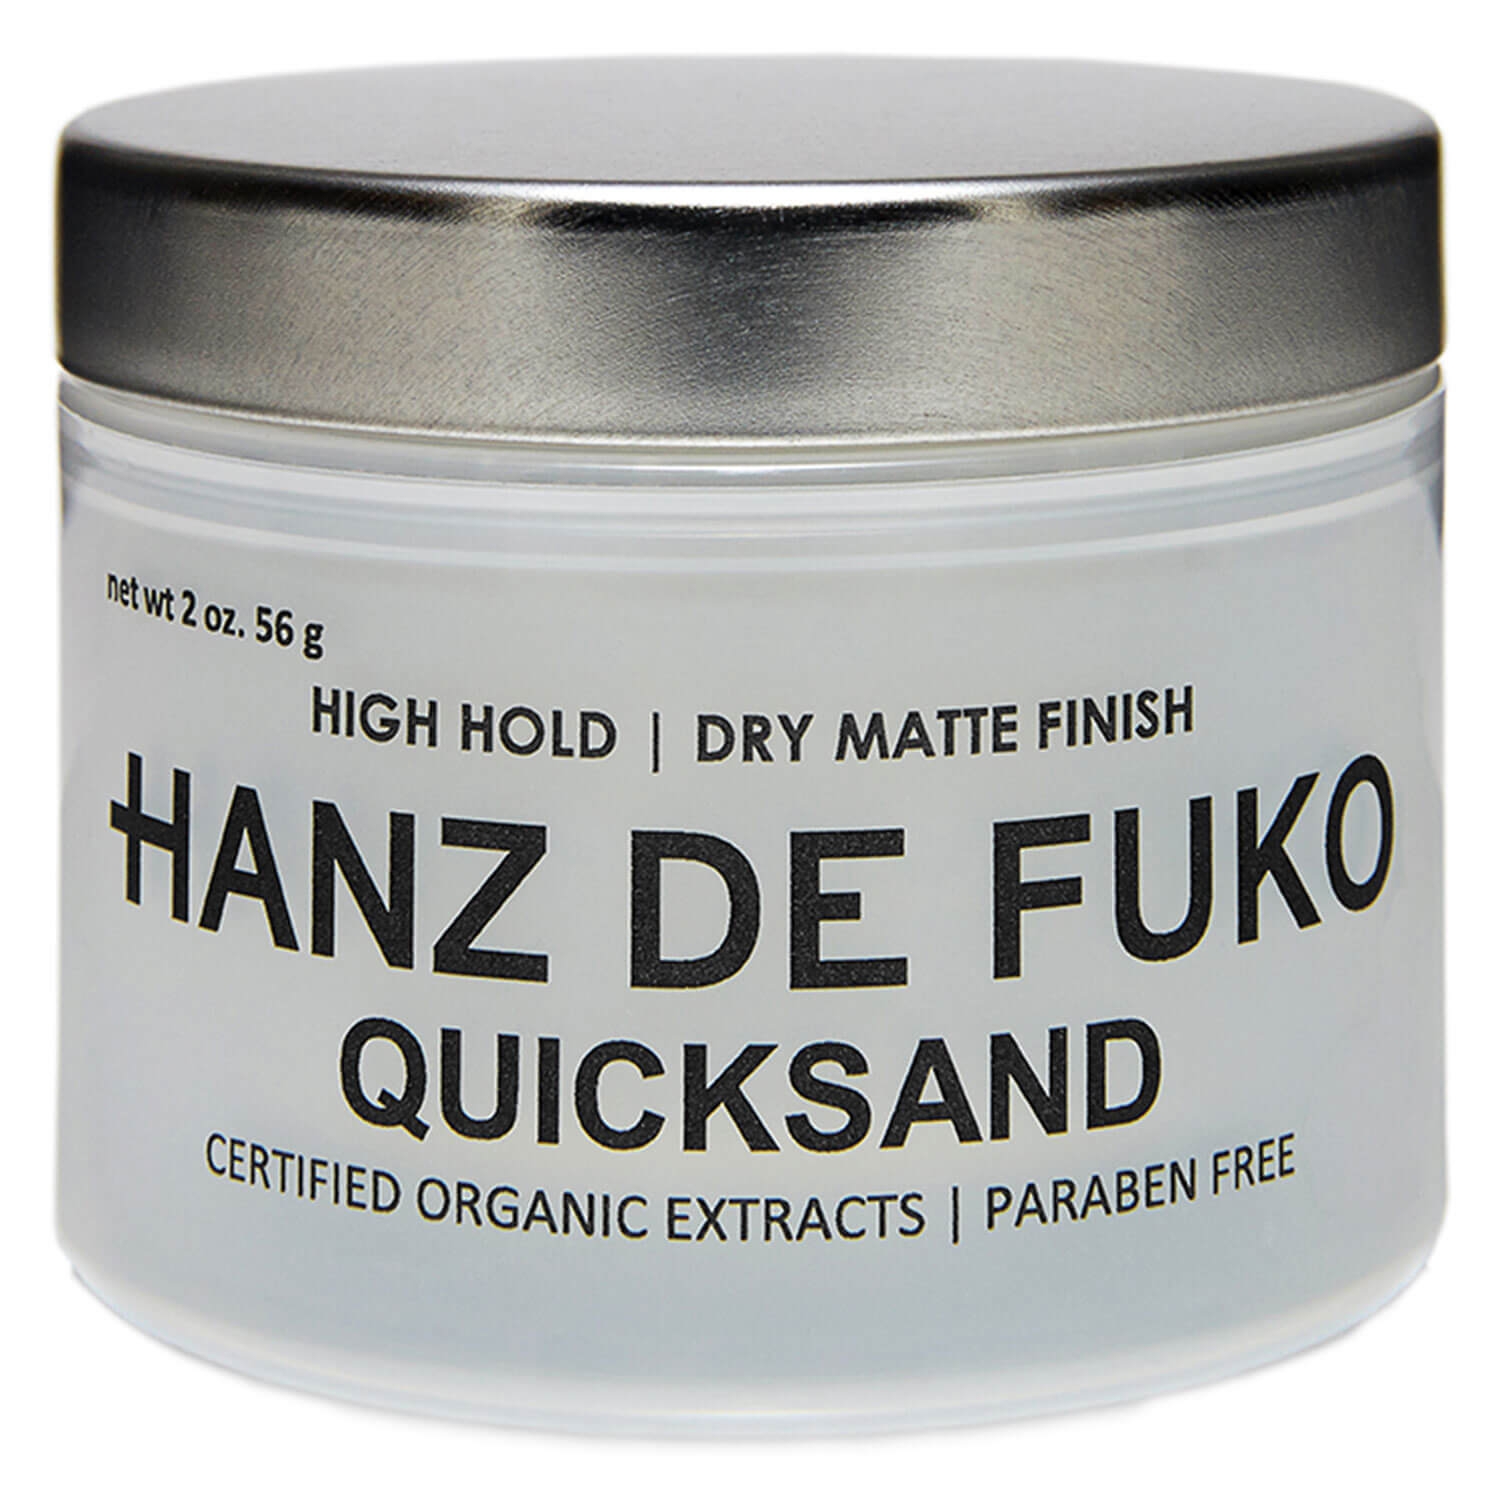 Produktbild von HANZ DE FUKO - Quicksand